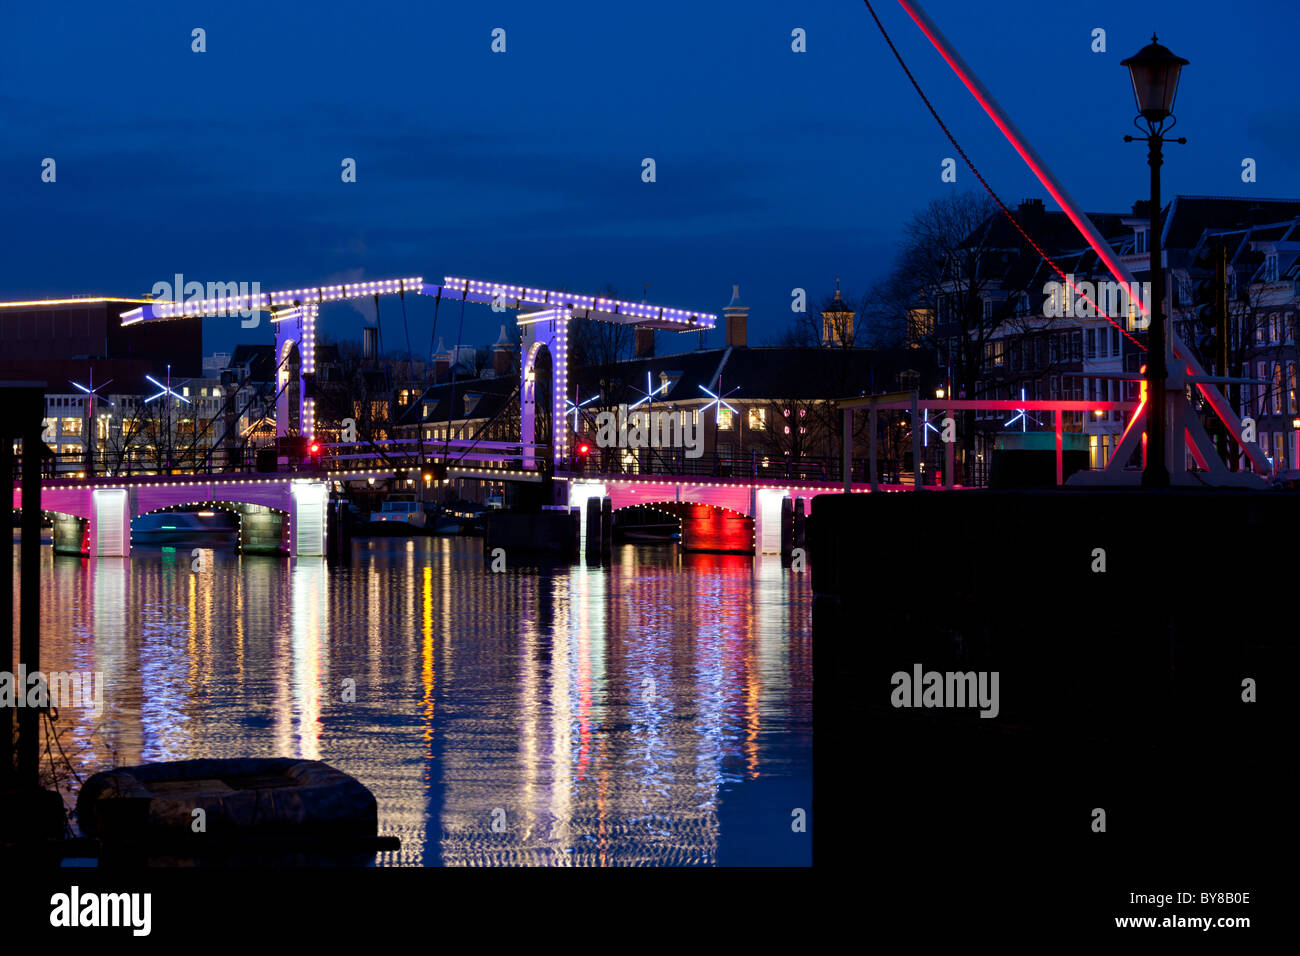 Le Magere Brug ou Skinny Bridge Amsterdam est un célèbre monument. Sur la rivière Amstel au crépuscule en hiver avec illumination festive Banque D'Images